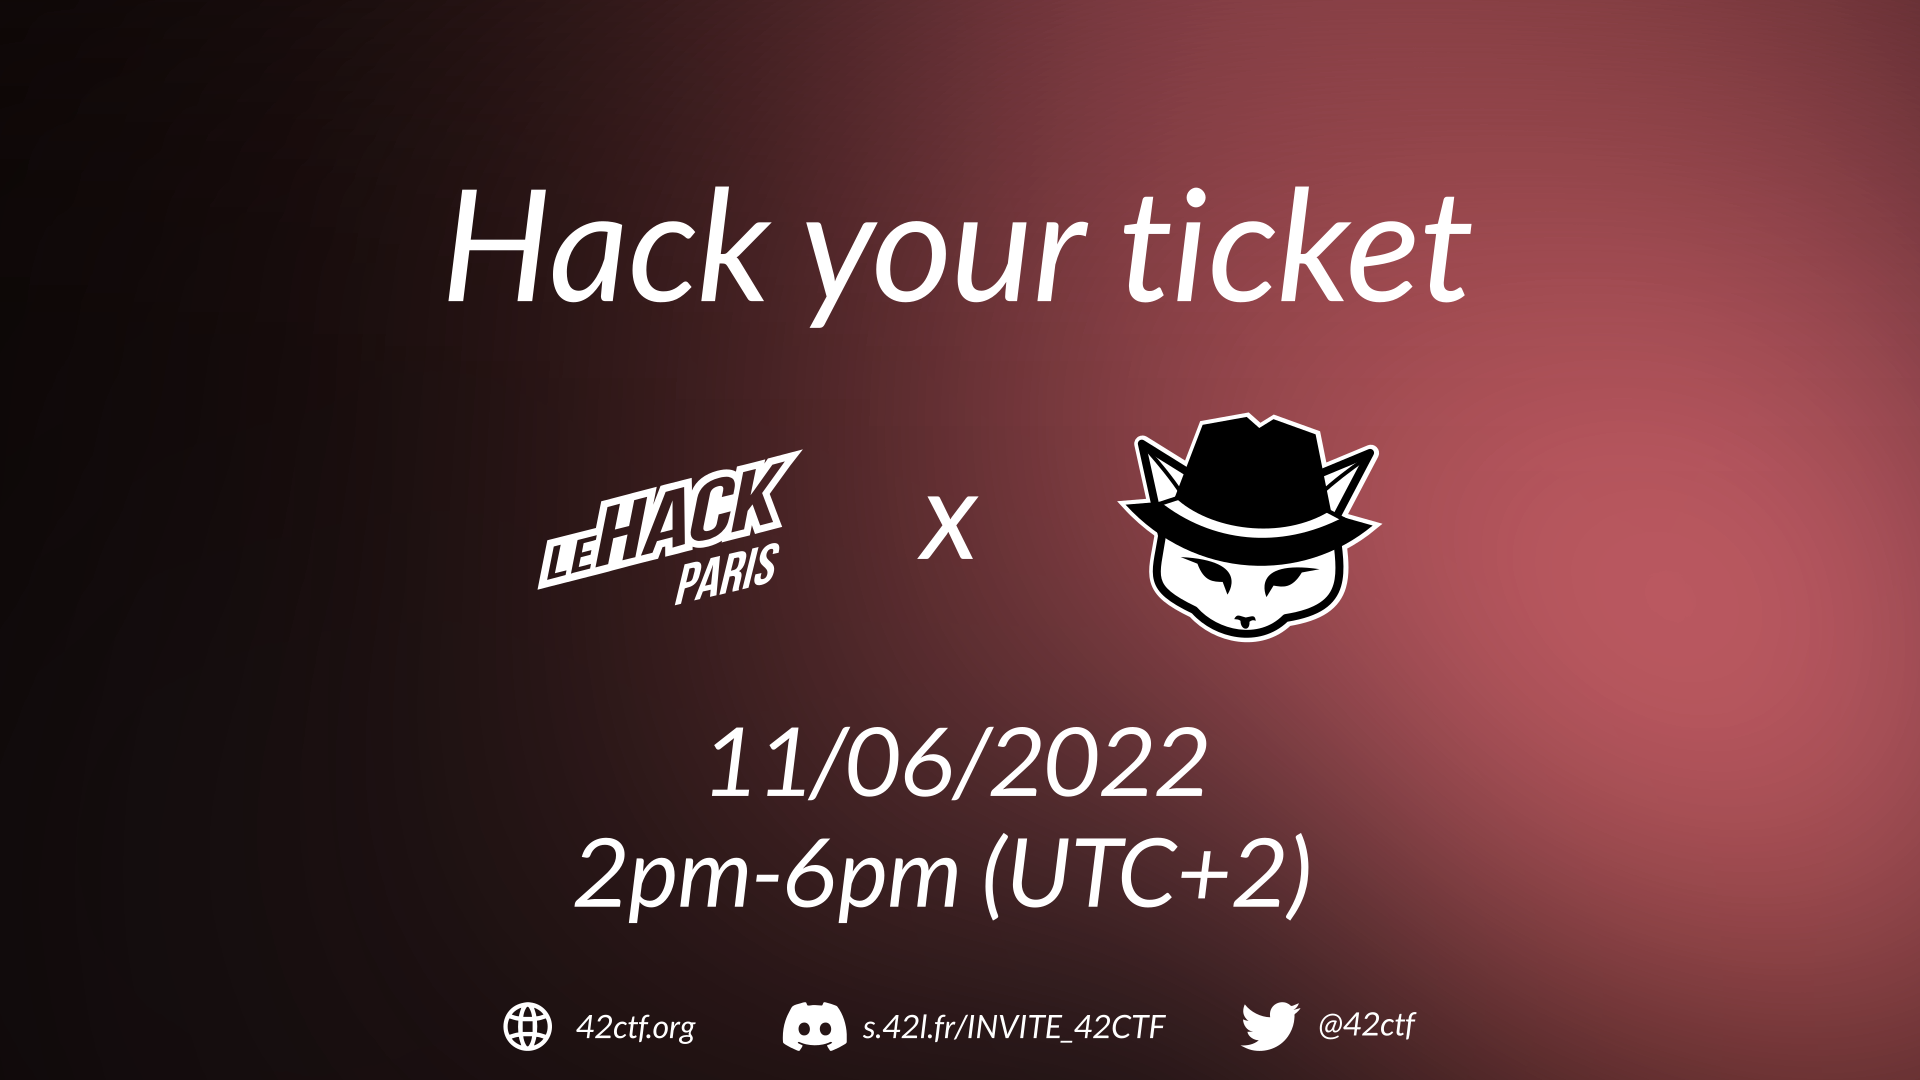 Hack your ticket